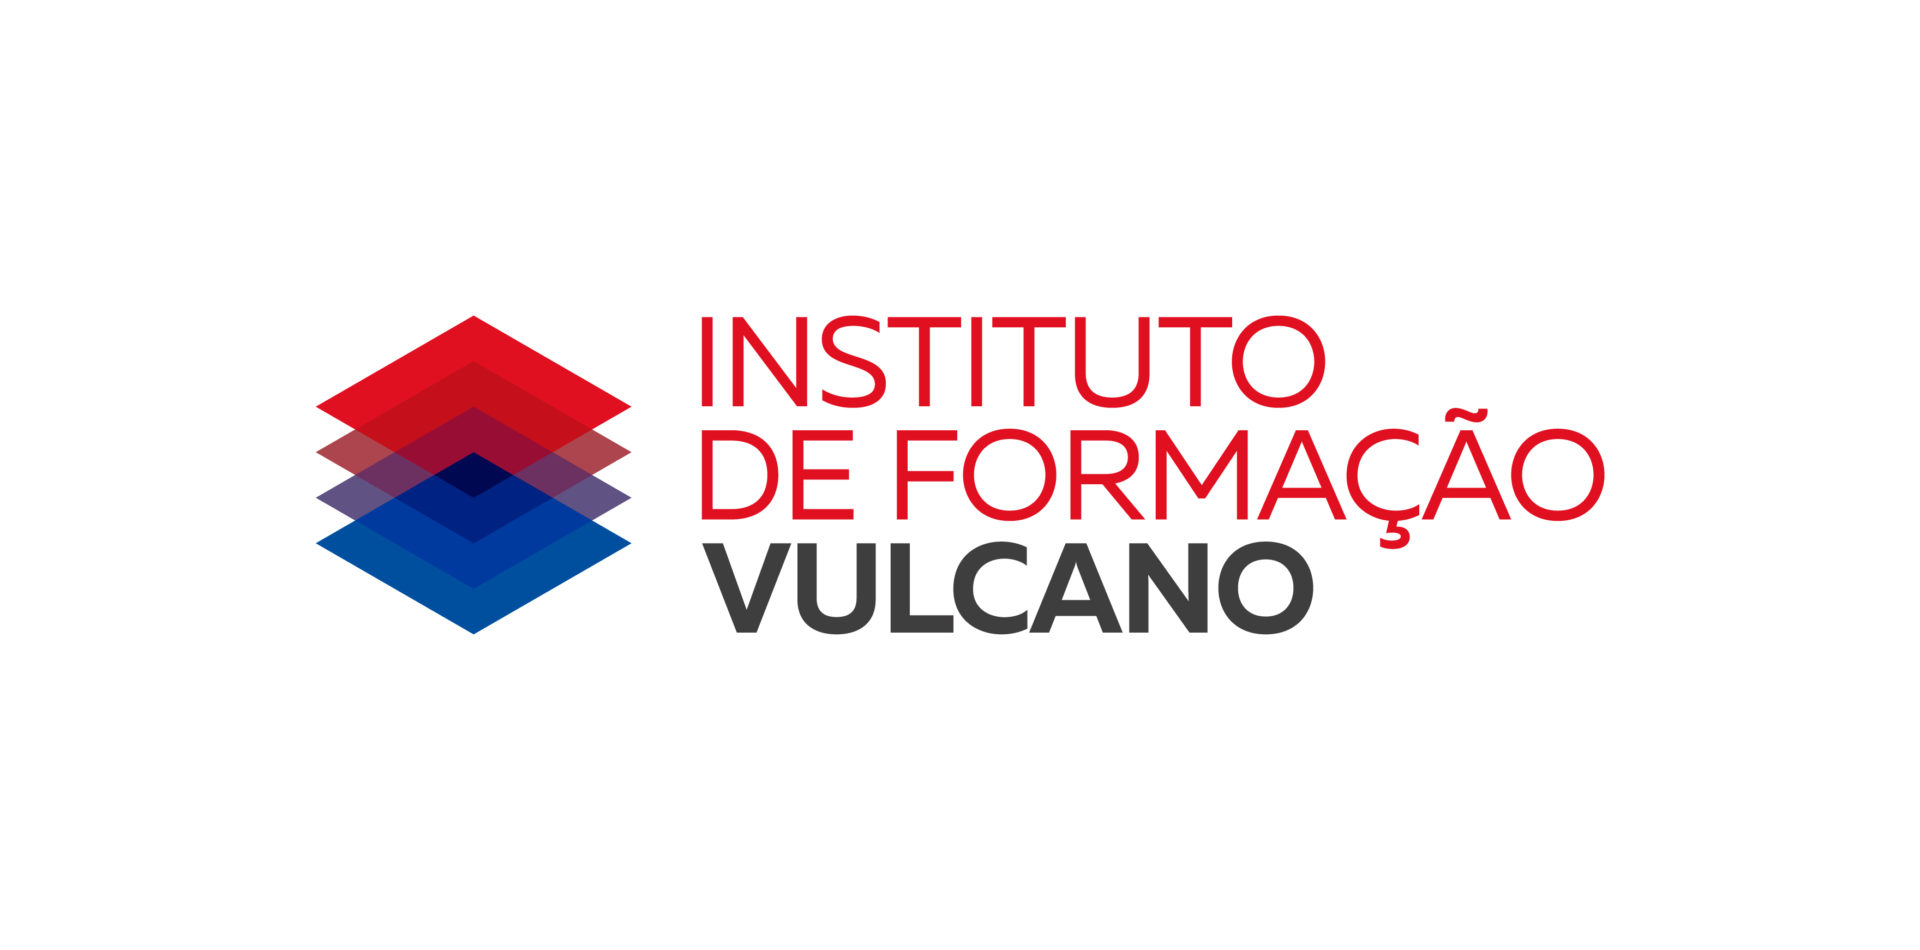 Instituto de Formação Vulcano coopera com Instituto Superior de Engenharia do Porto